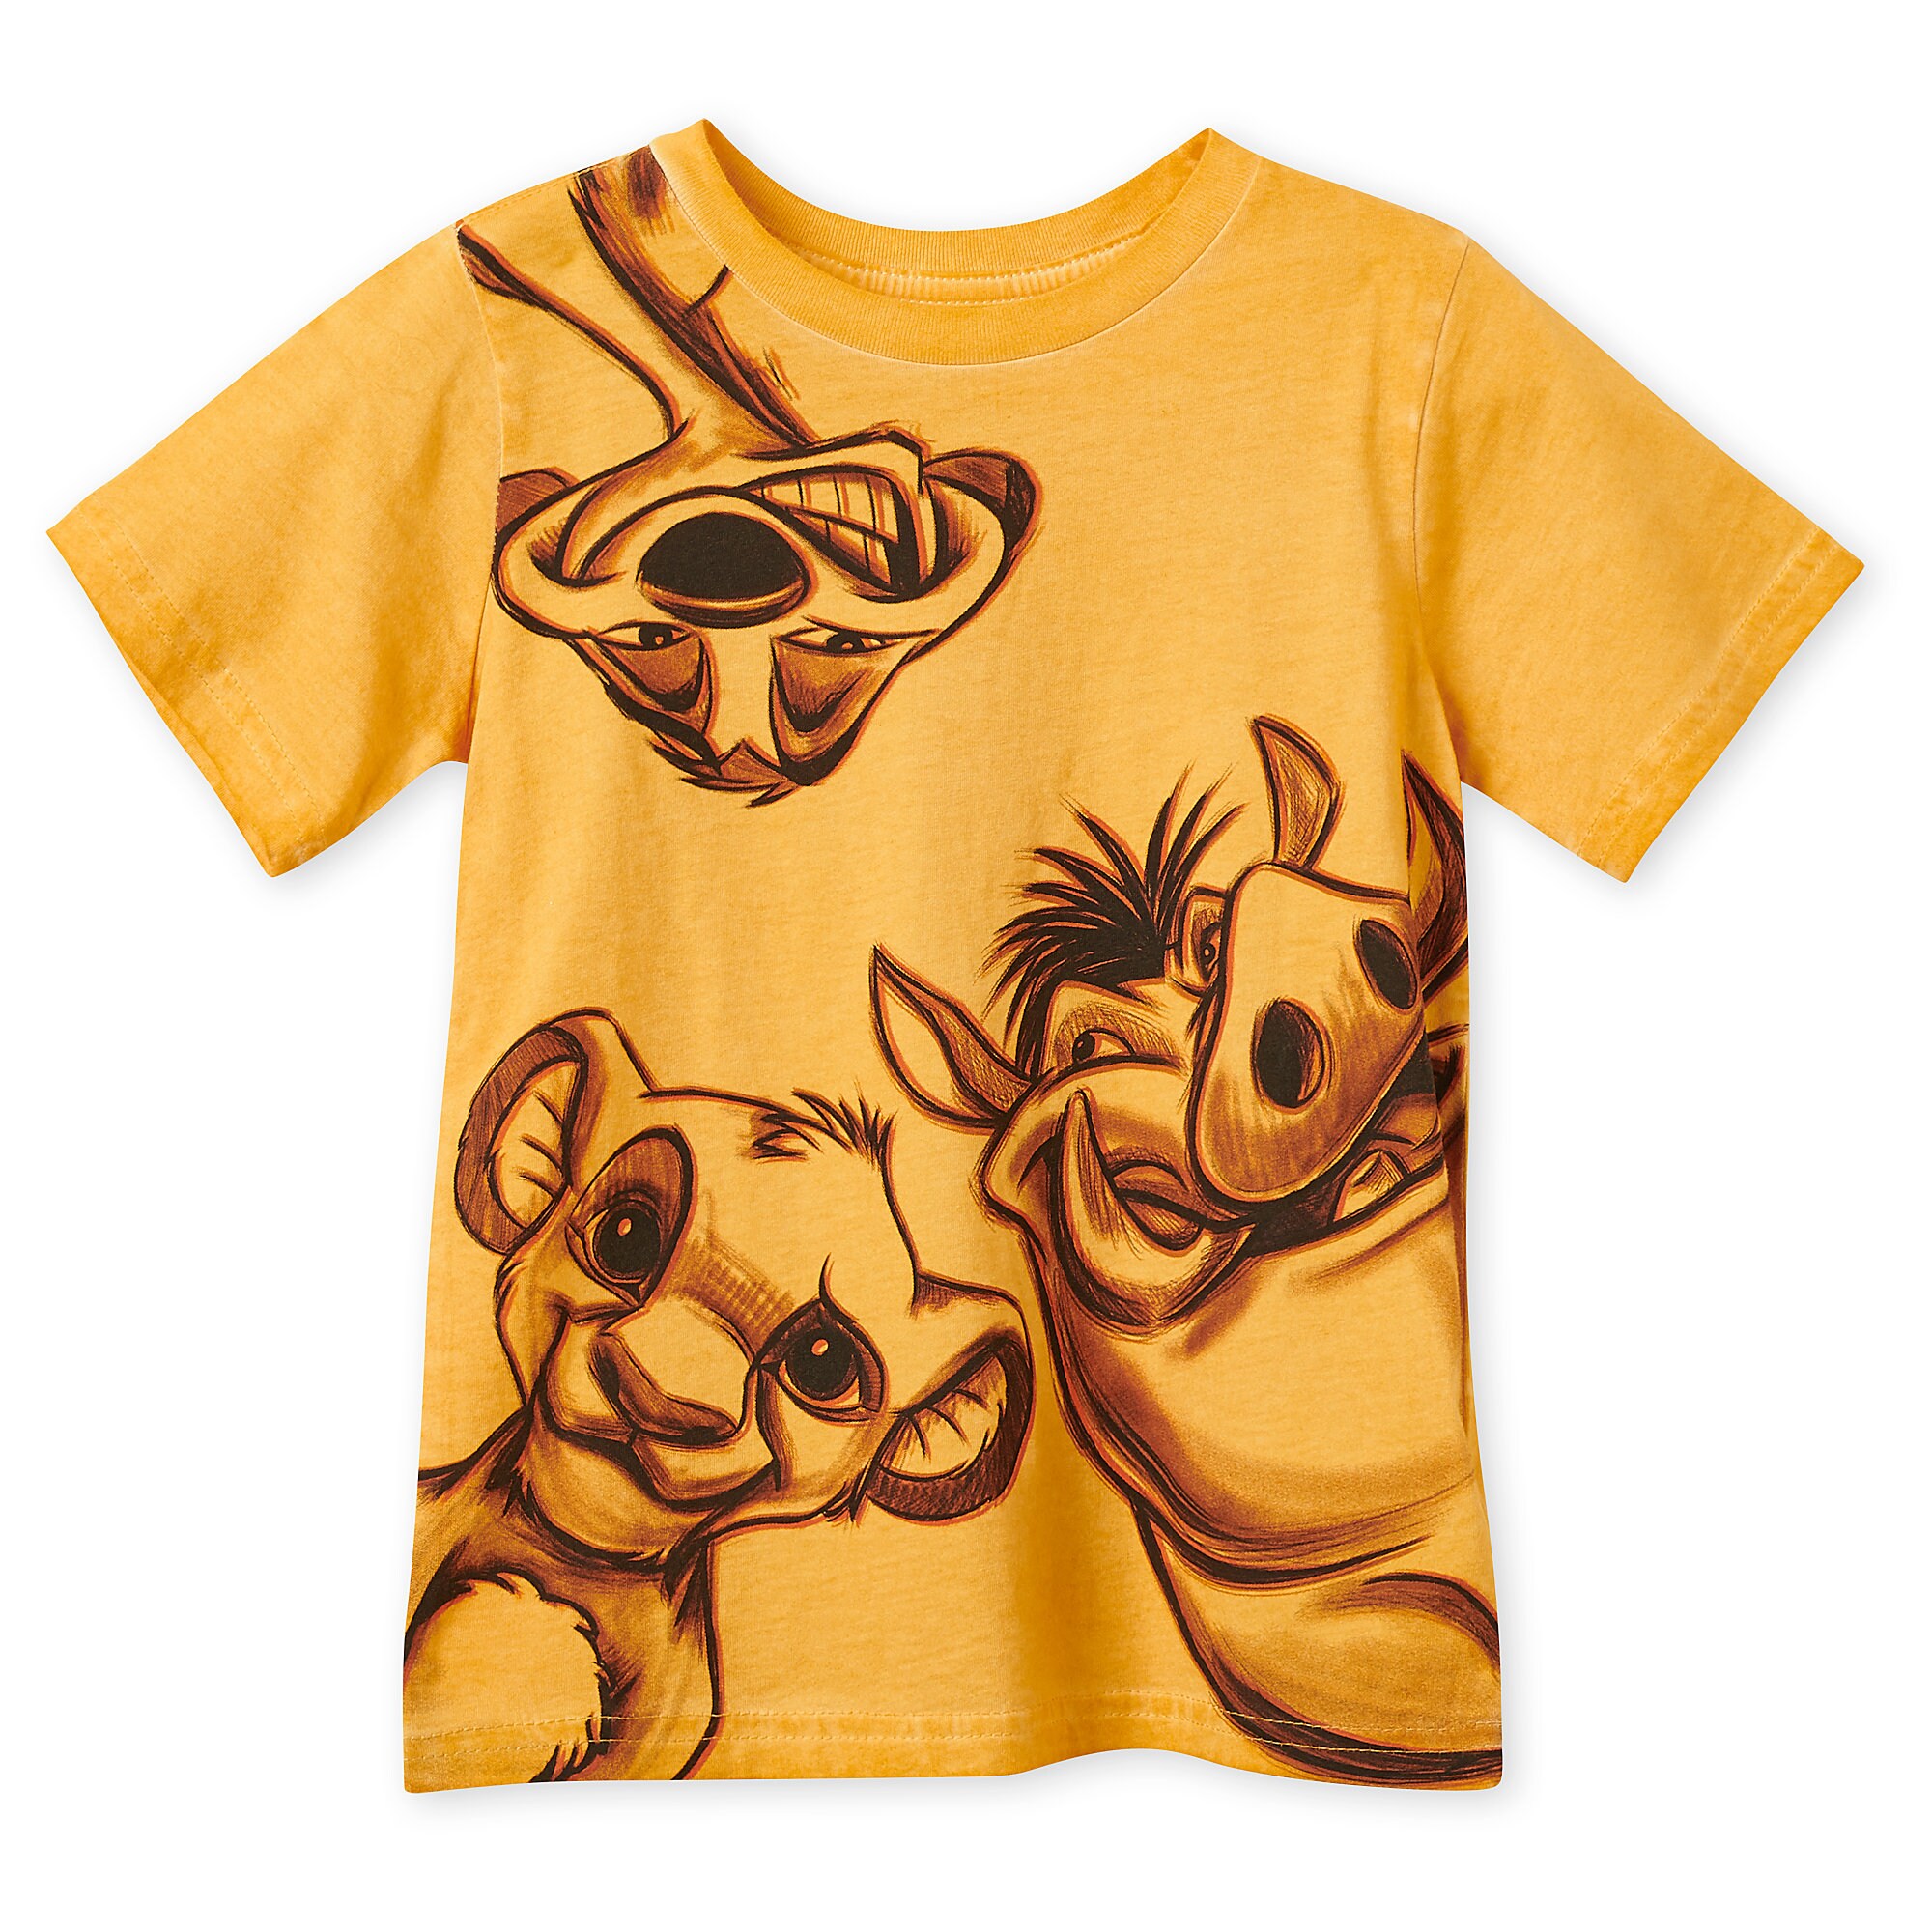 Simba, Timon, and Pumbaa T-Shirt for Boys - The Lion King